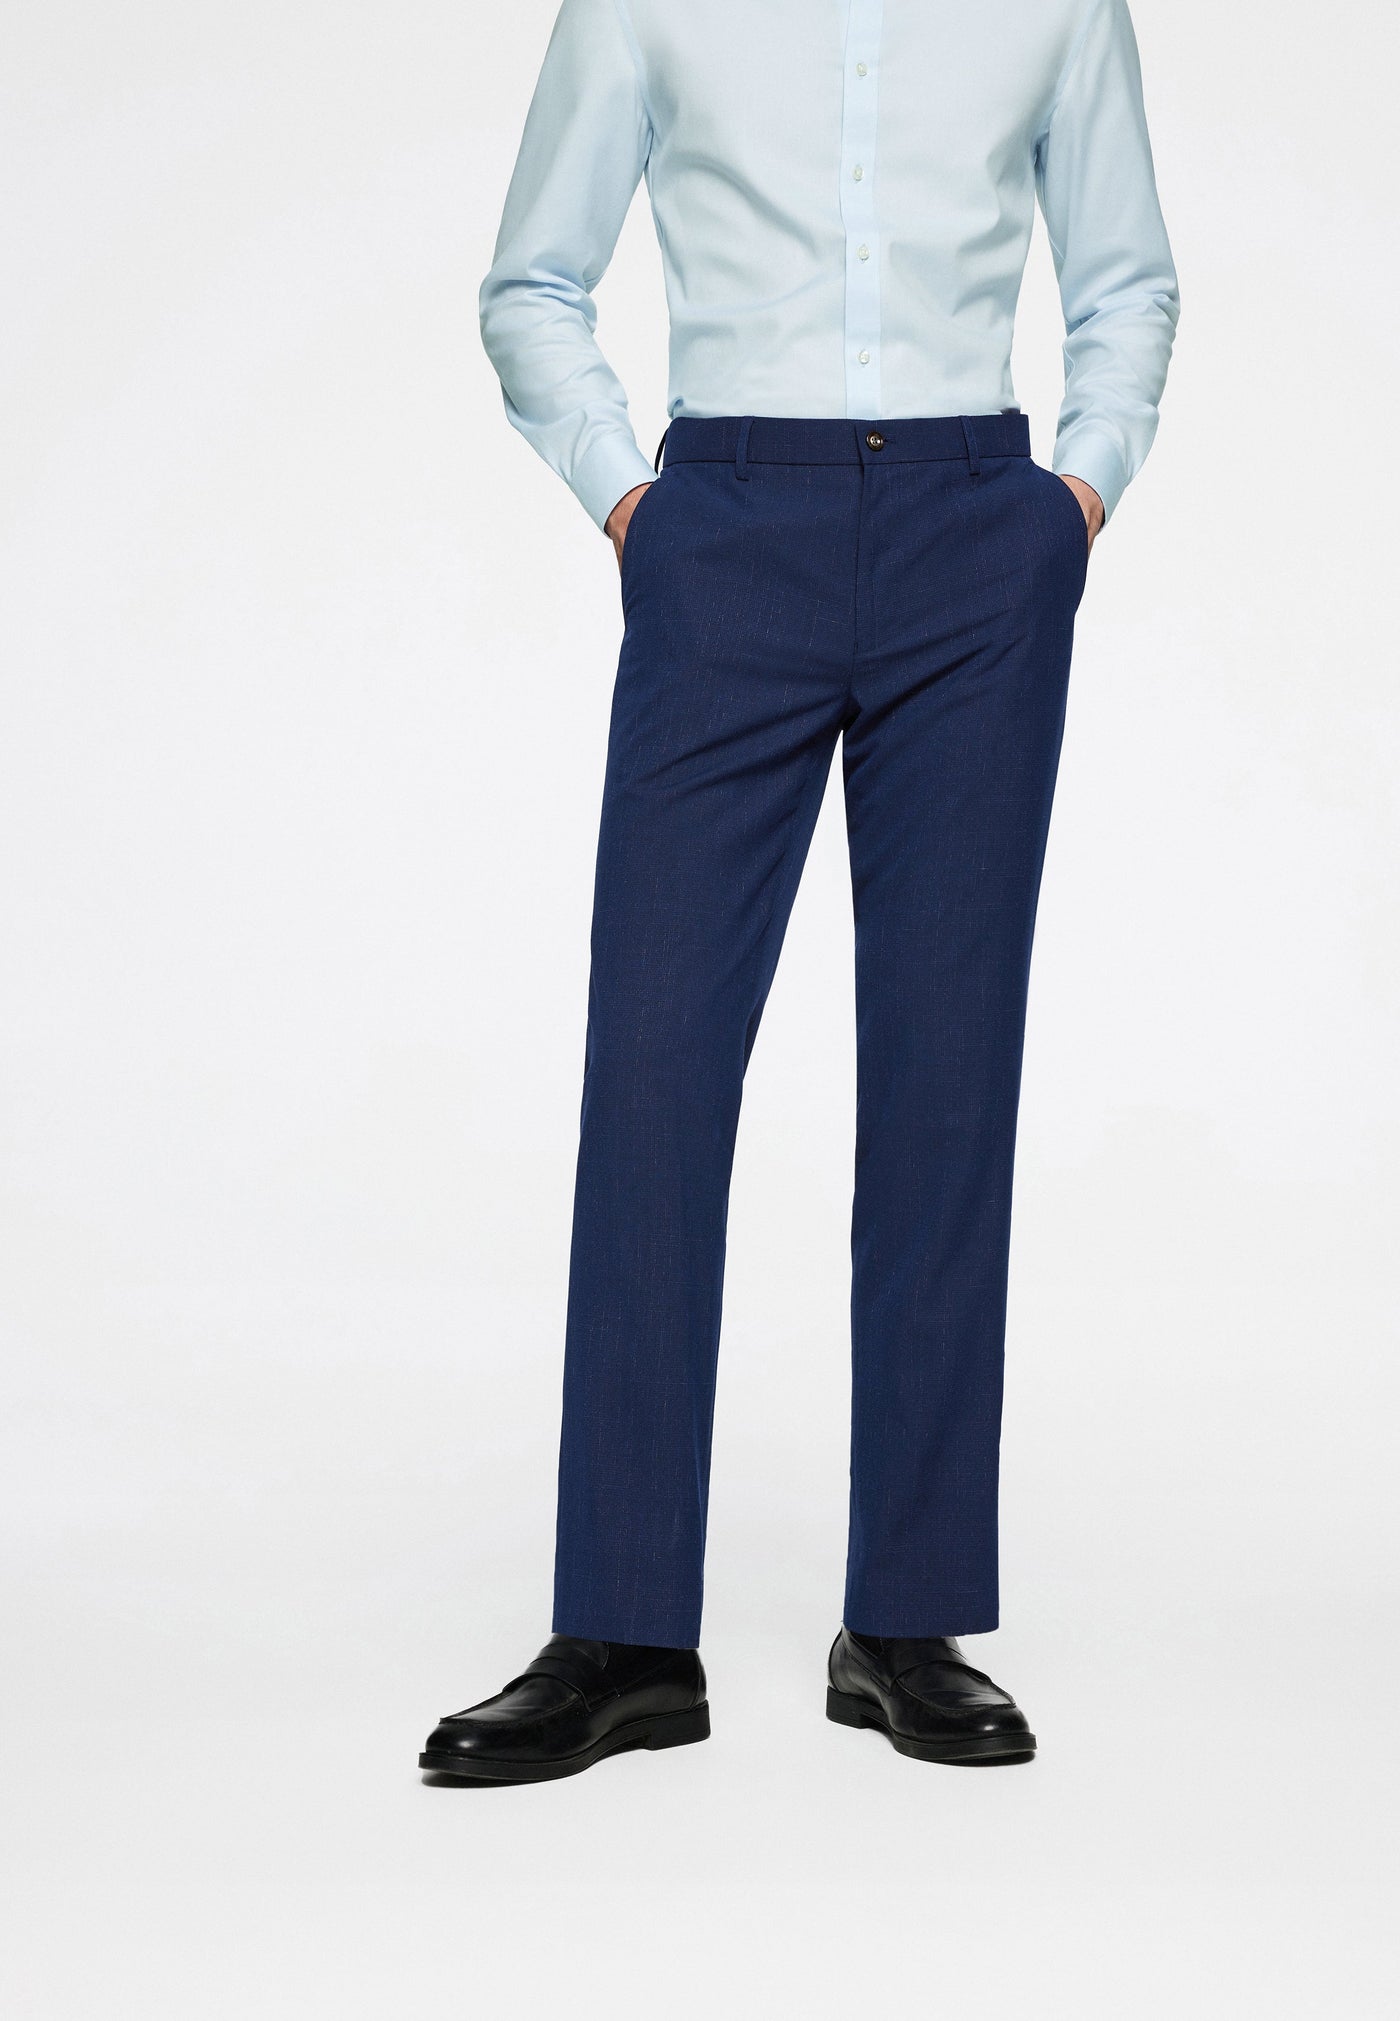 Men Clothing Anti-Bacterial Suit Pants Smart Fit